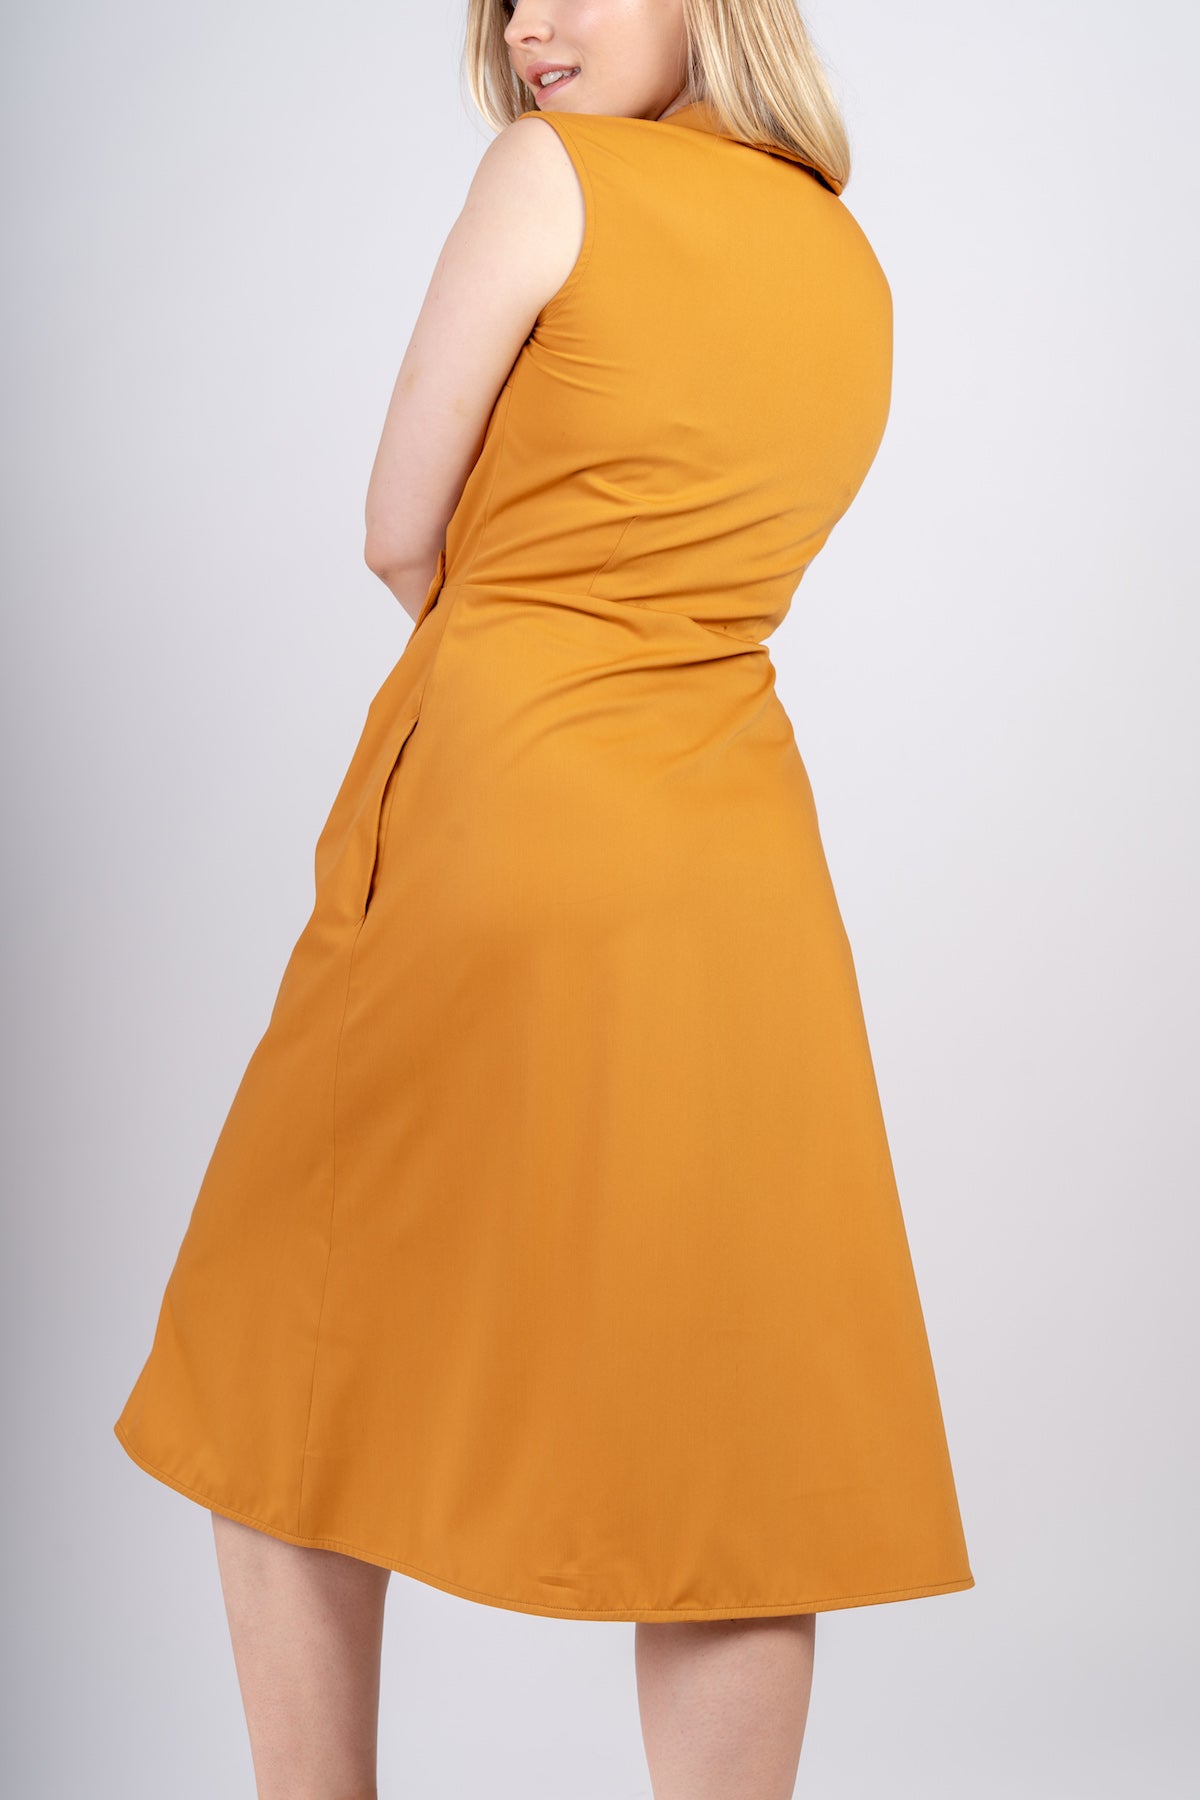 AYANI lang senfgelb Kleid mit Taschen. Wickelkleid in gelb. Gelbes Kleid online kaufen.